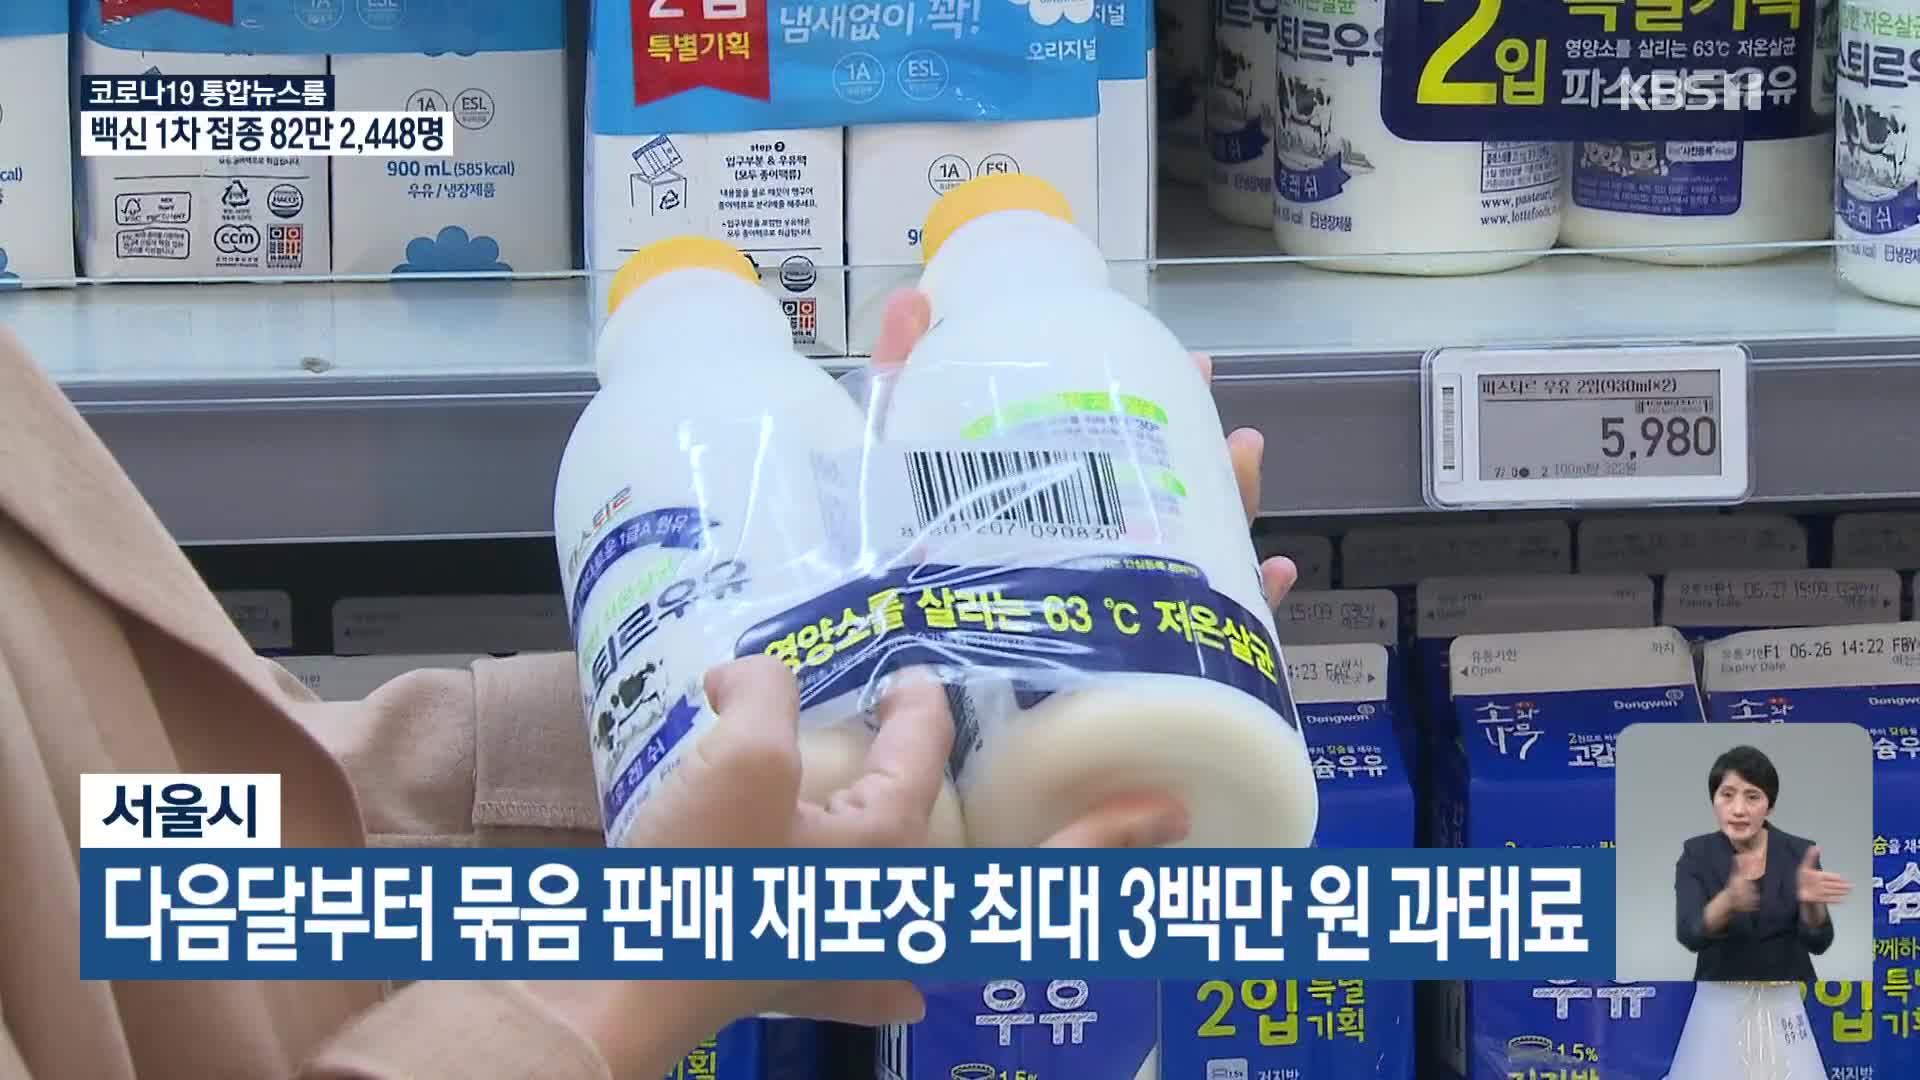 서울시, 다음달부터 묶음 판매 재포장 최대 3백만 원 과태료